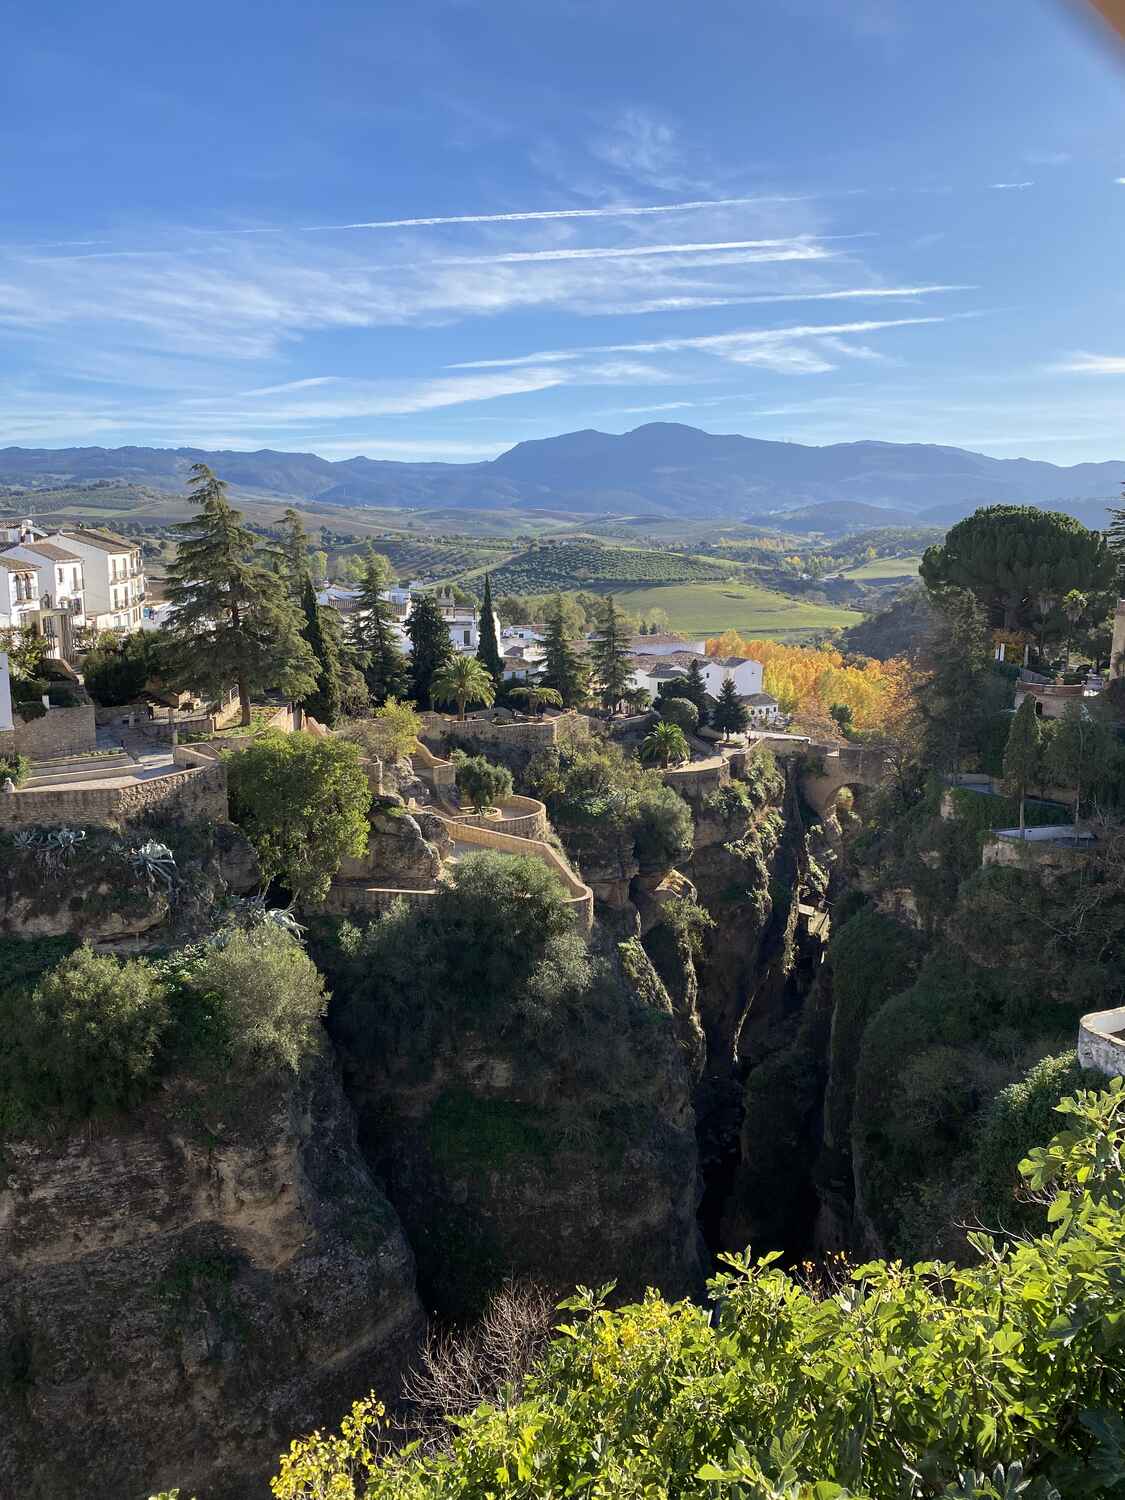 views at the Mirador de Aldehuela in Ronda